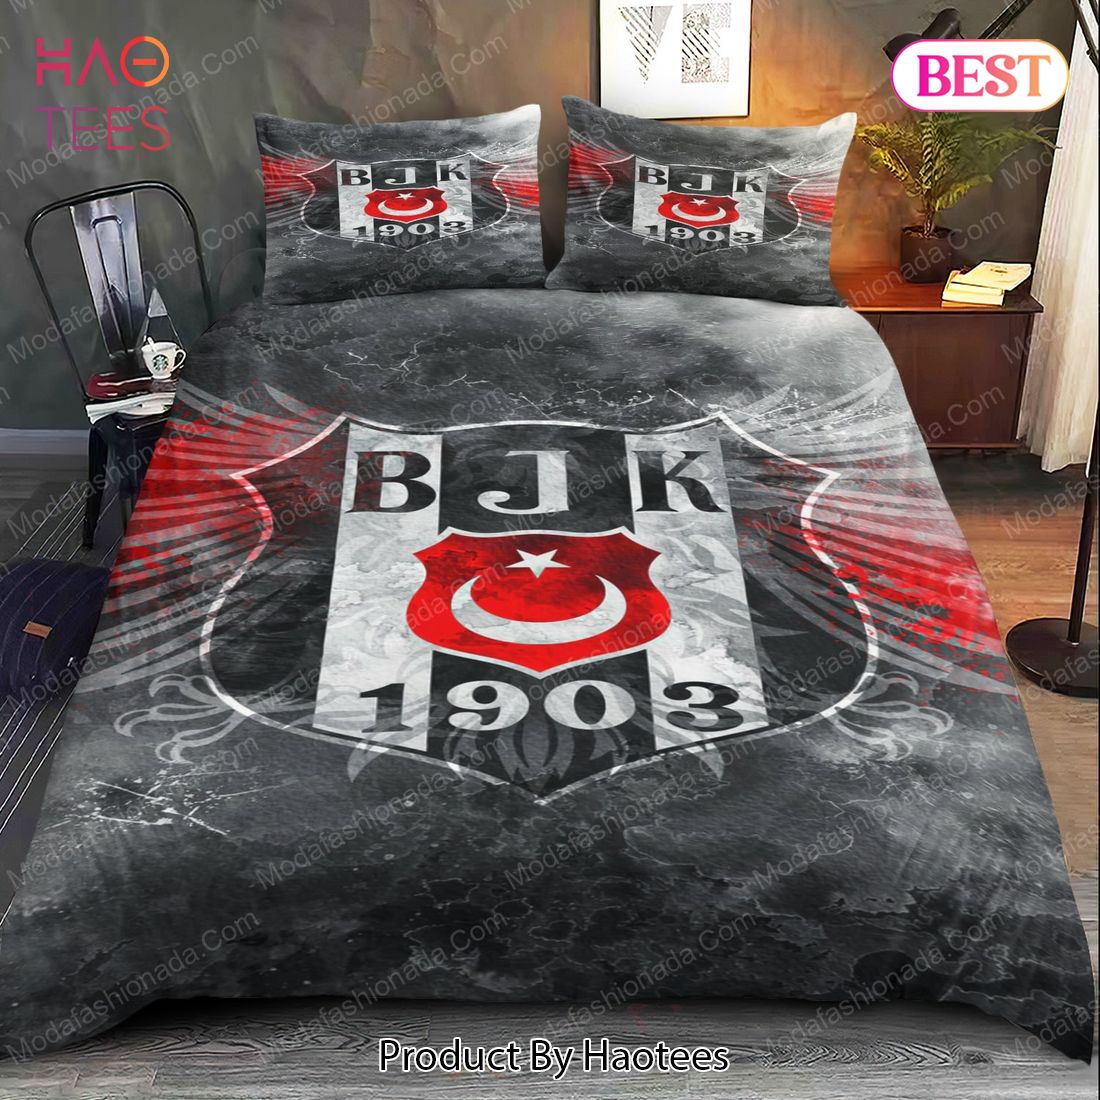 Buy Besiktas Logo Bedding Sets Bed Sets, Bedroom Sets, Comforter Sets, Duvet Cover, Bedspread